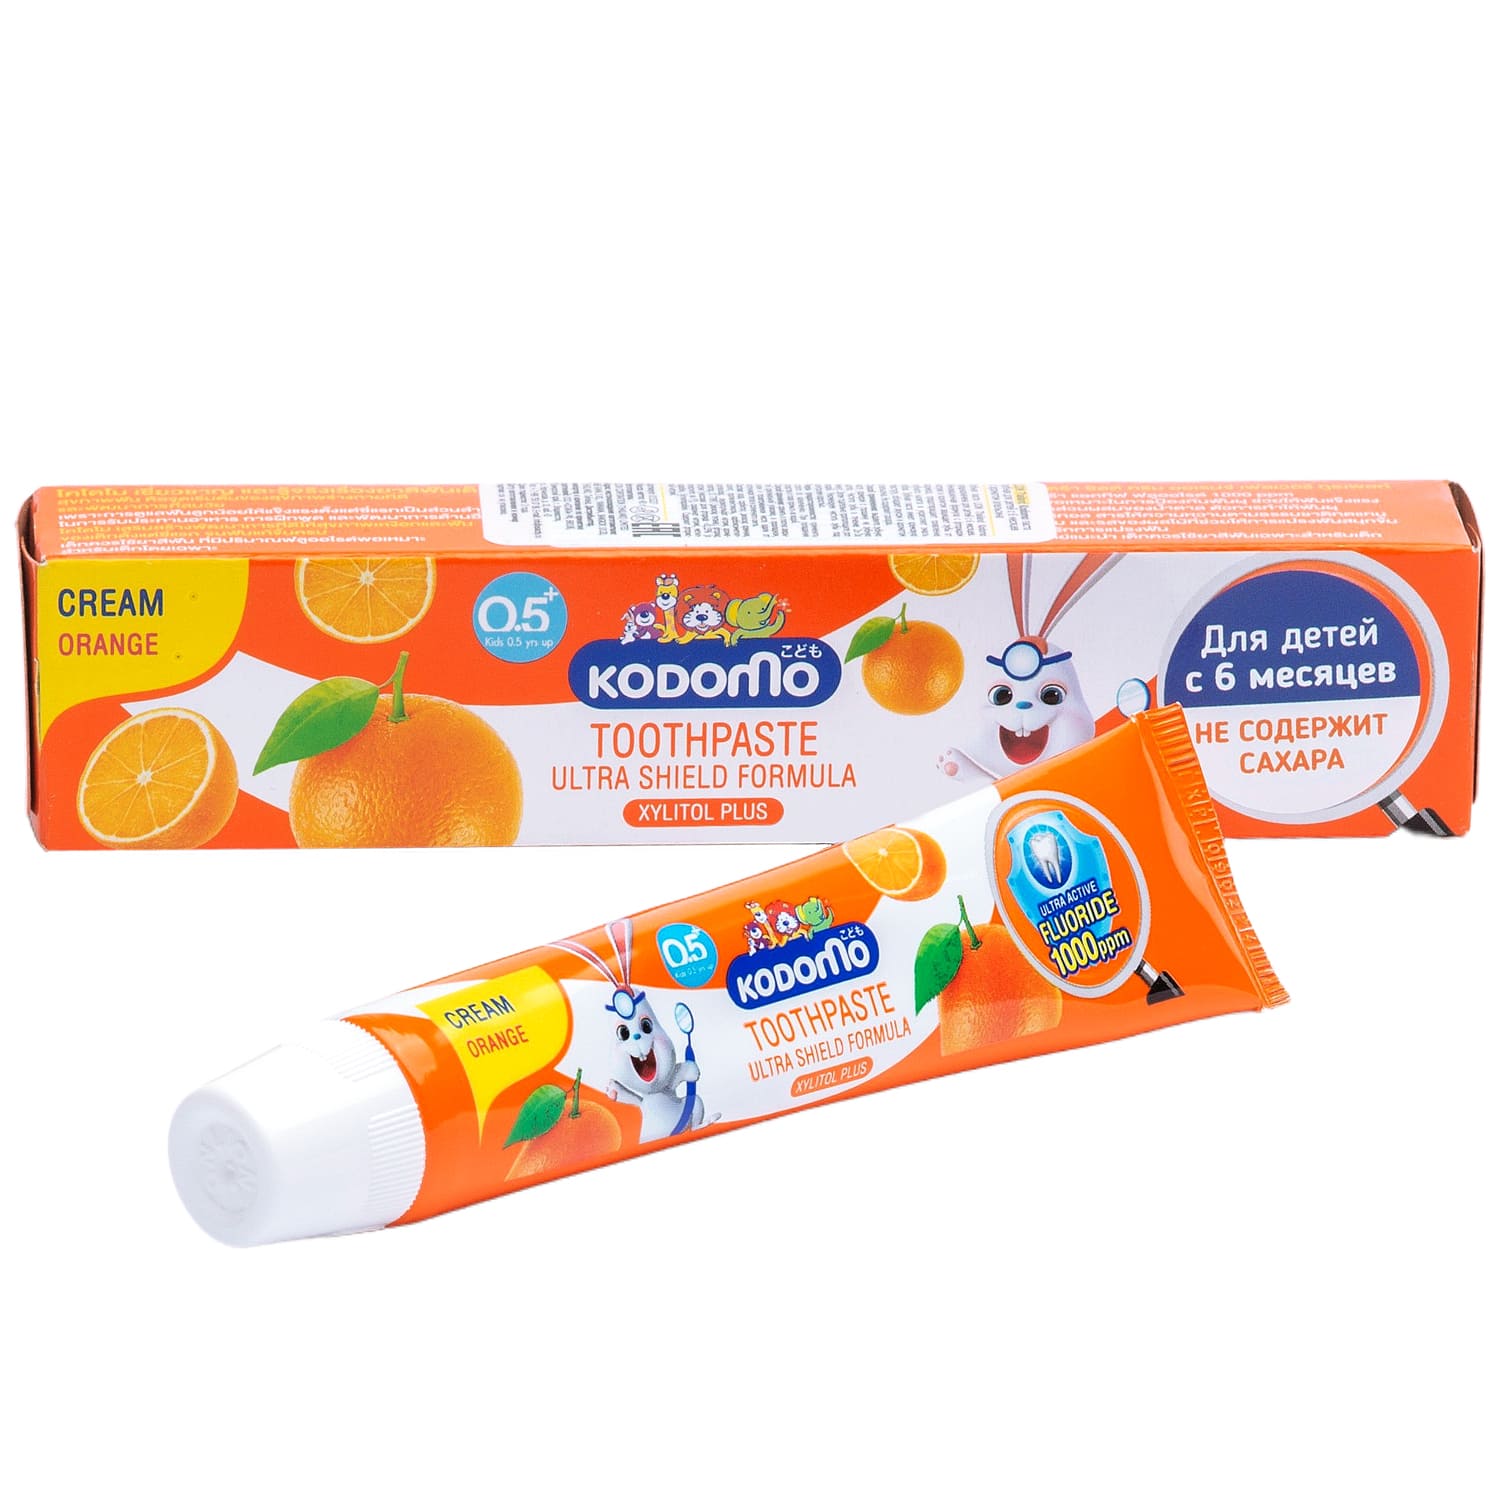 цена Lion Thailand Зубная паста для детей с 6 месяцев с ароматом апельсина, 40 г (Lion Thailand, Kodomo)